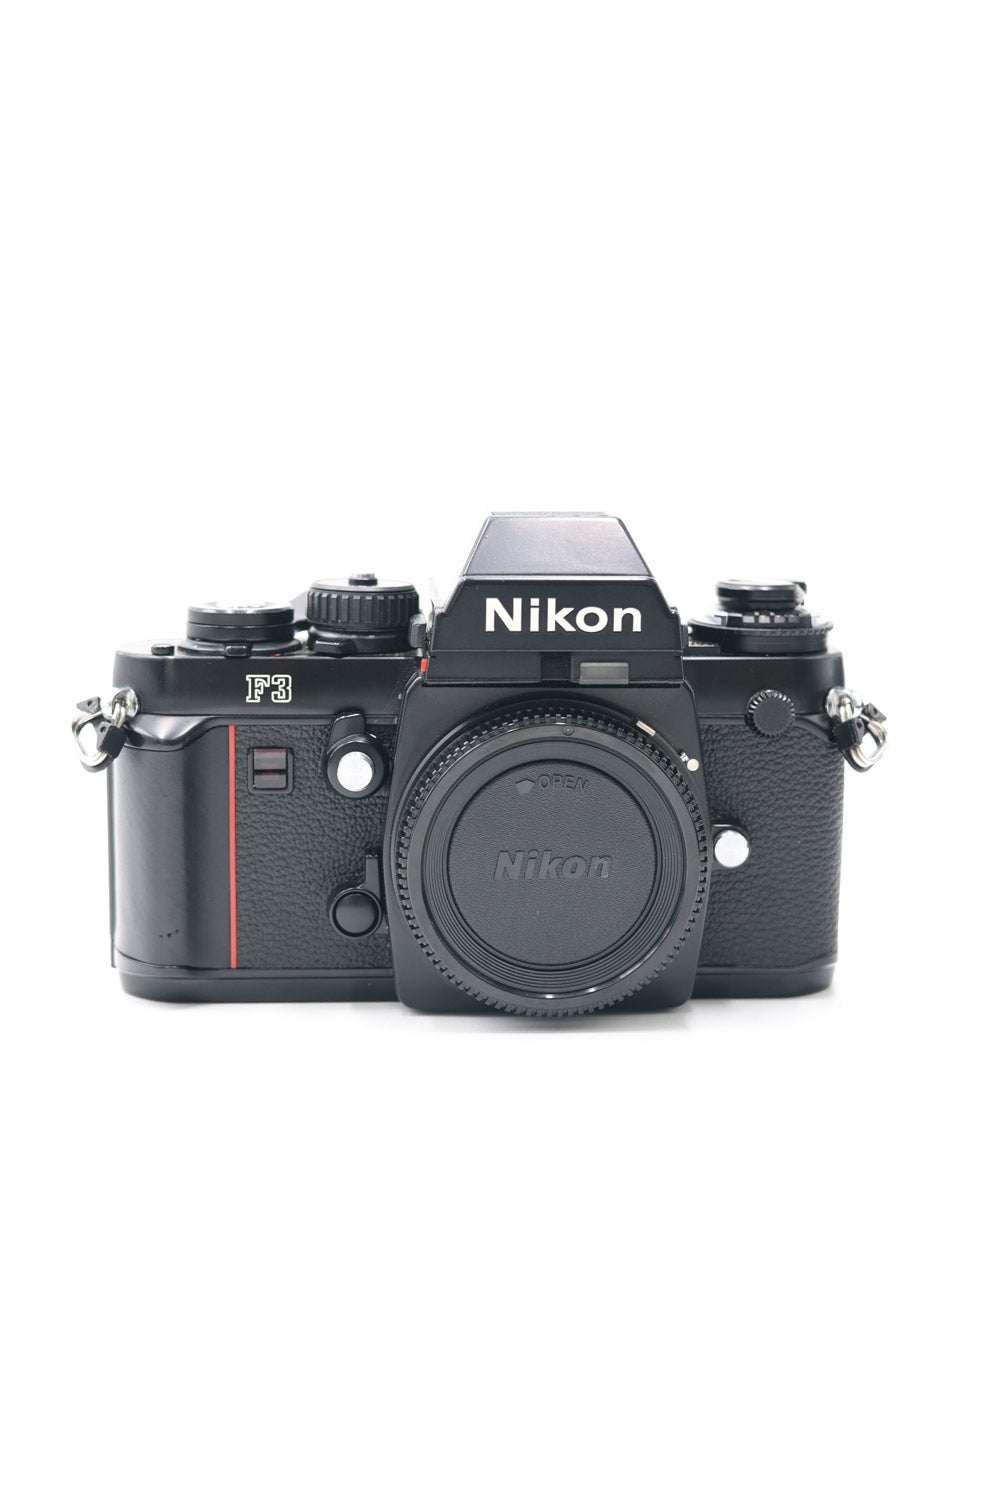 Nikon F3/22031 F3 35mm Film Camera, Used